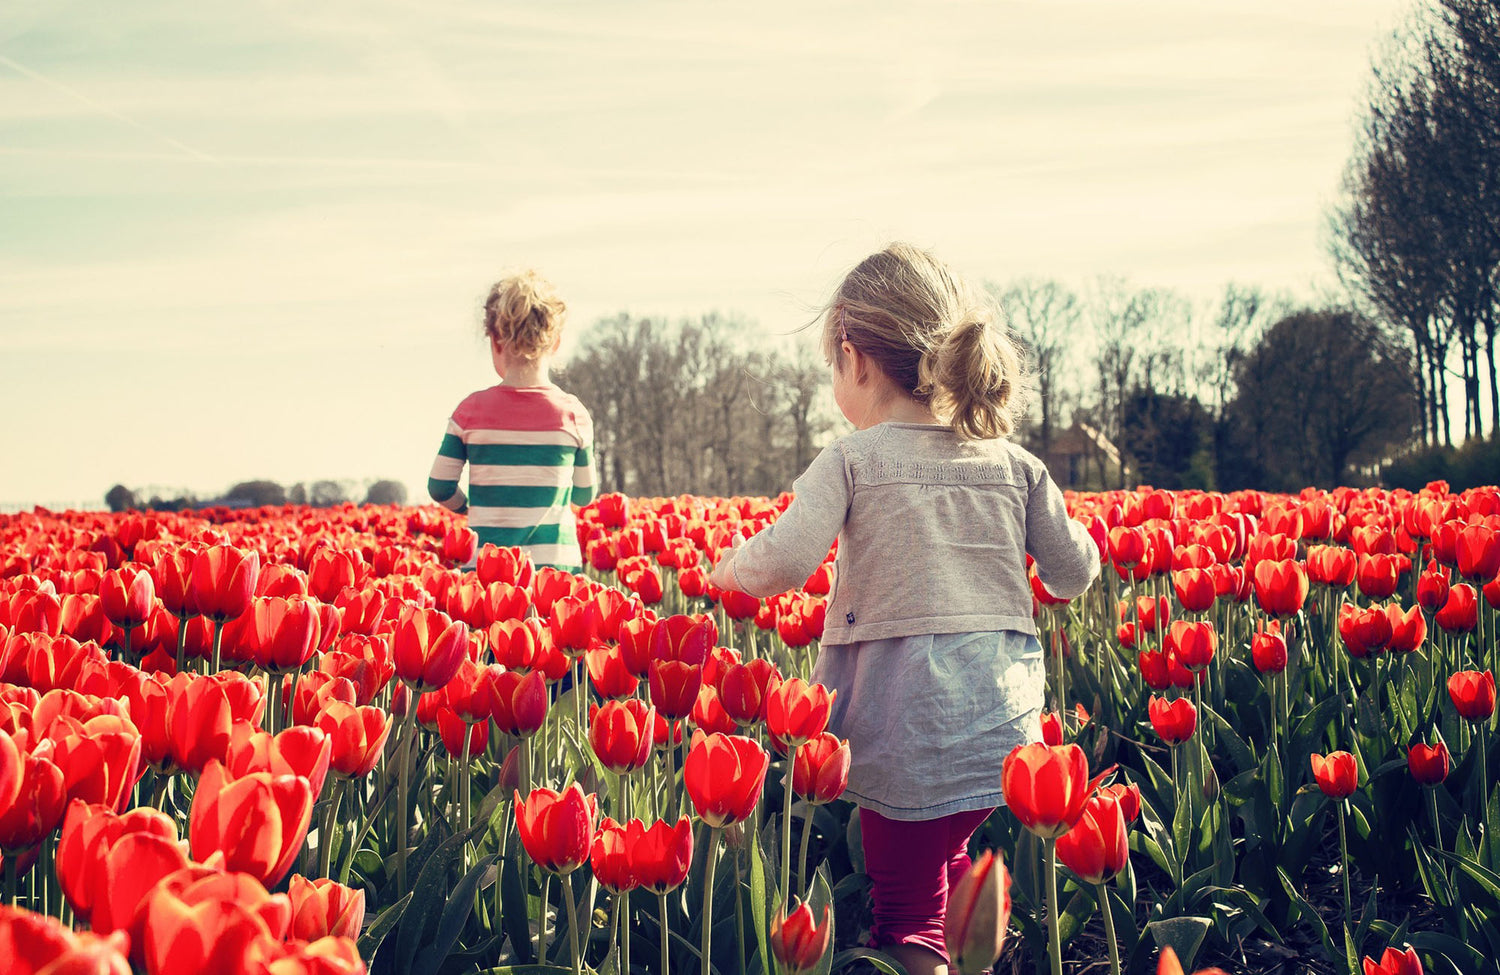 Two children walking amongst the tulips in Monbulk